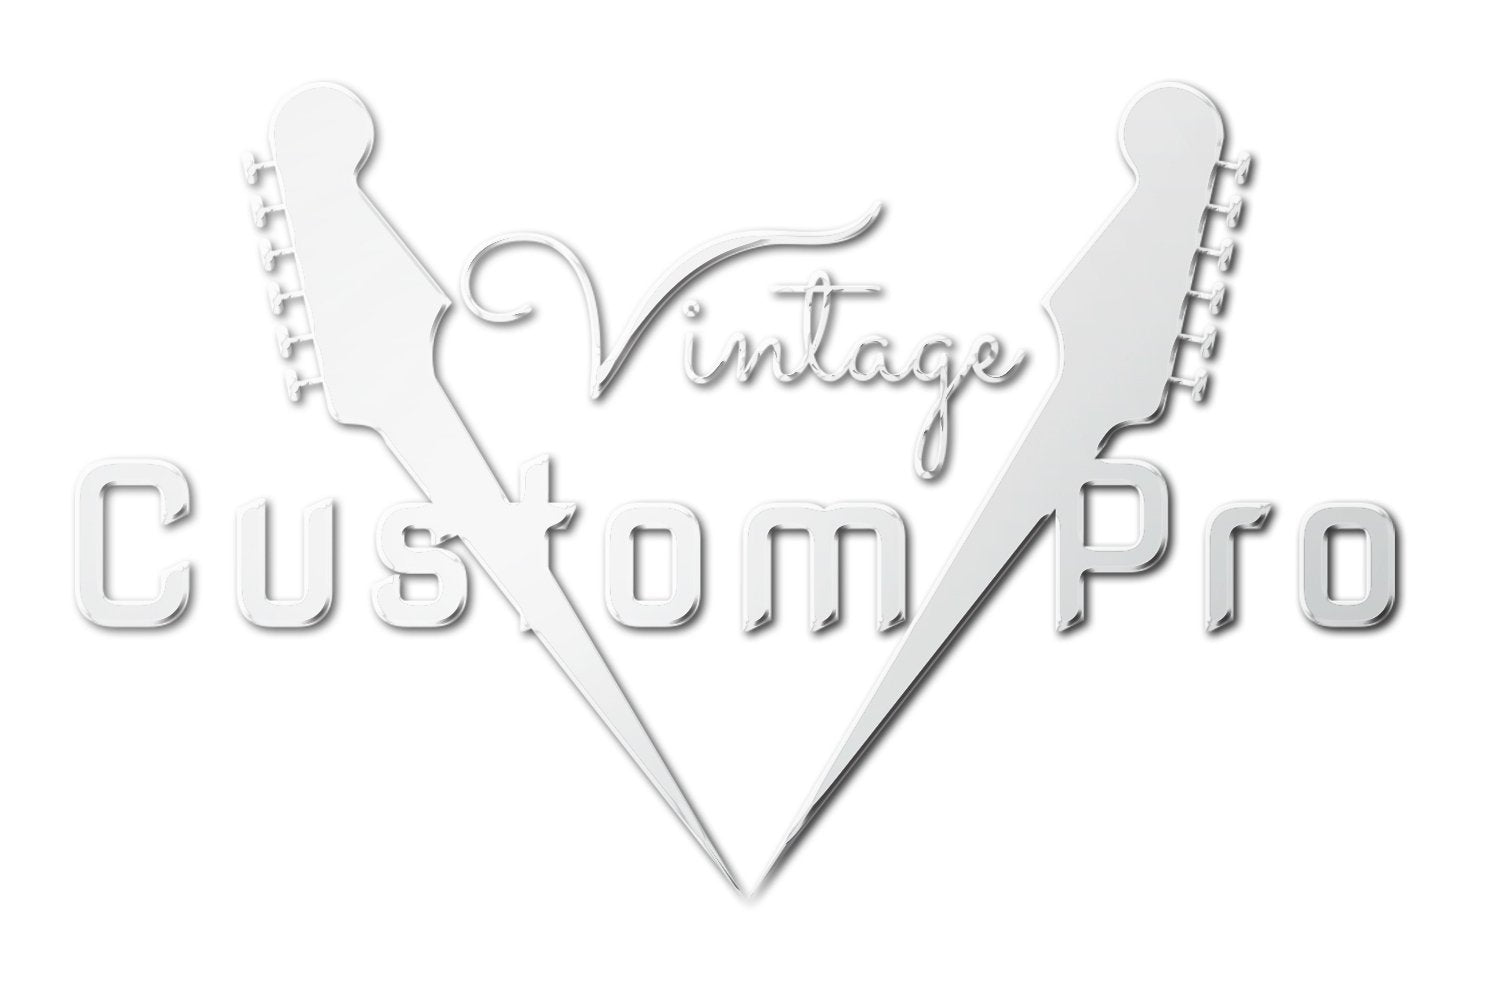 Vintage* V72HFTB Electric Guitar, Electric Guitar for sale at Richards Guitars.